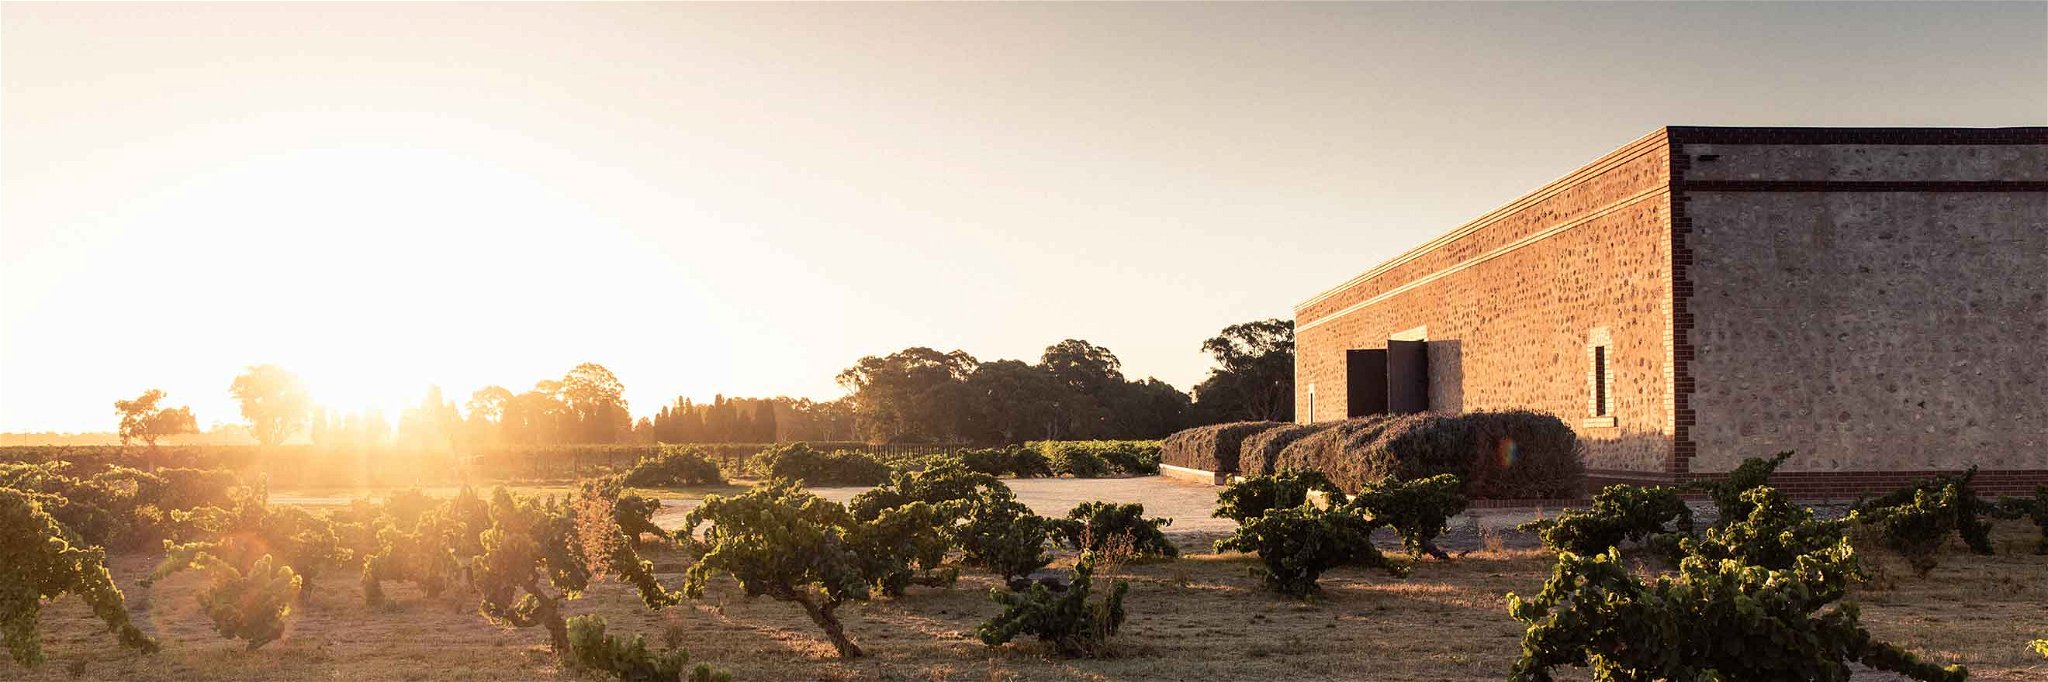 Der Name Barossa steht für Australiens berühmteste Weinbauregion.&nbsp;